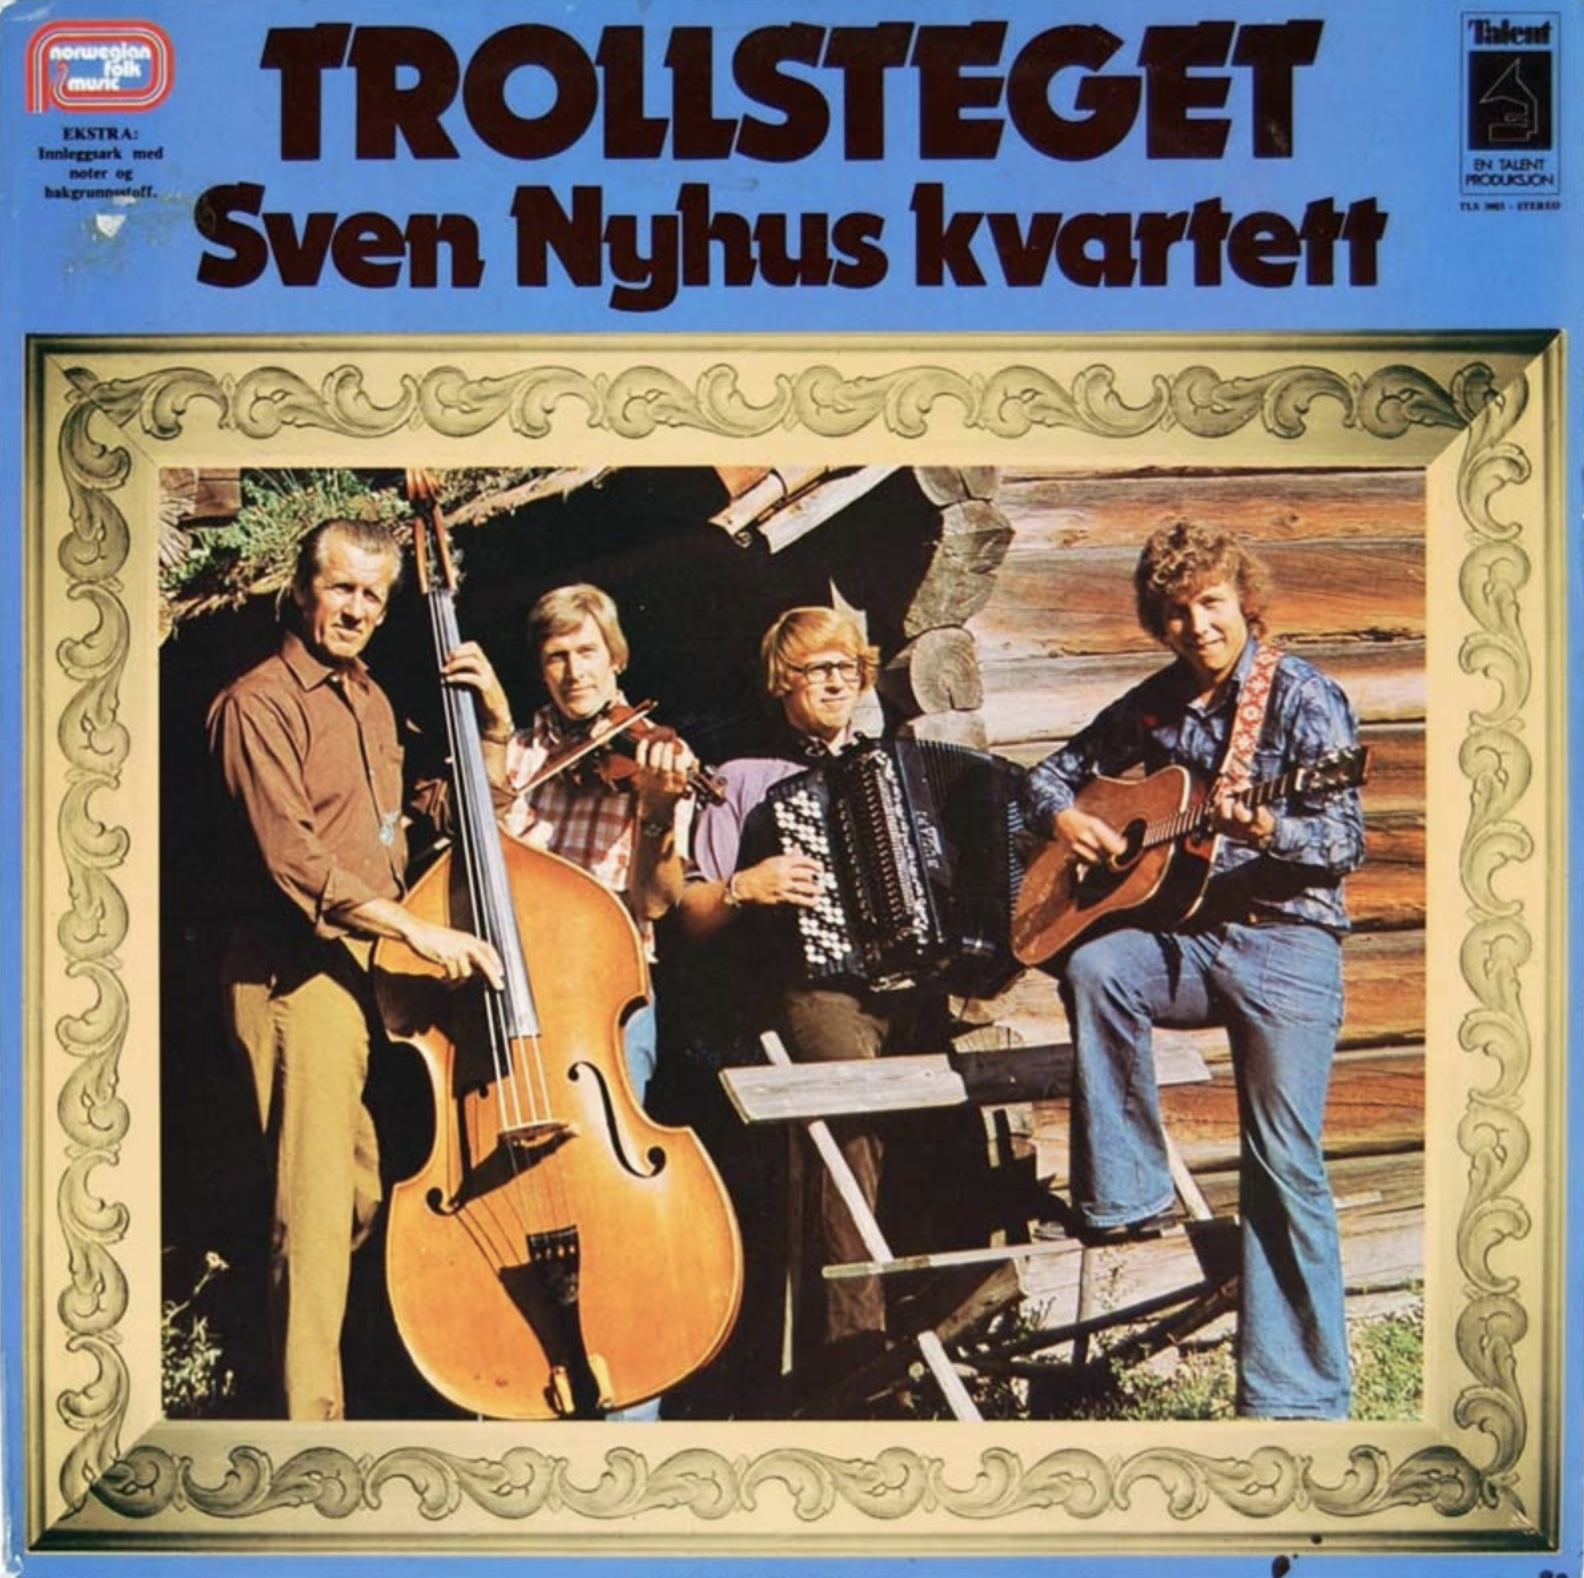 Albumomslaget til Sven Nyhus kvartetts Trollsteget